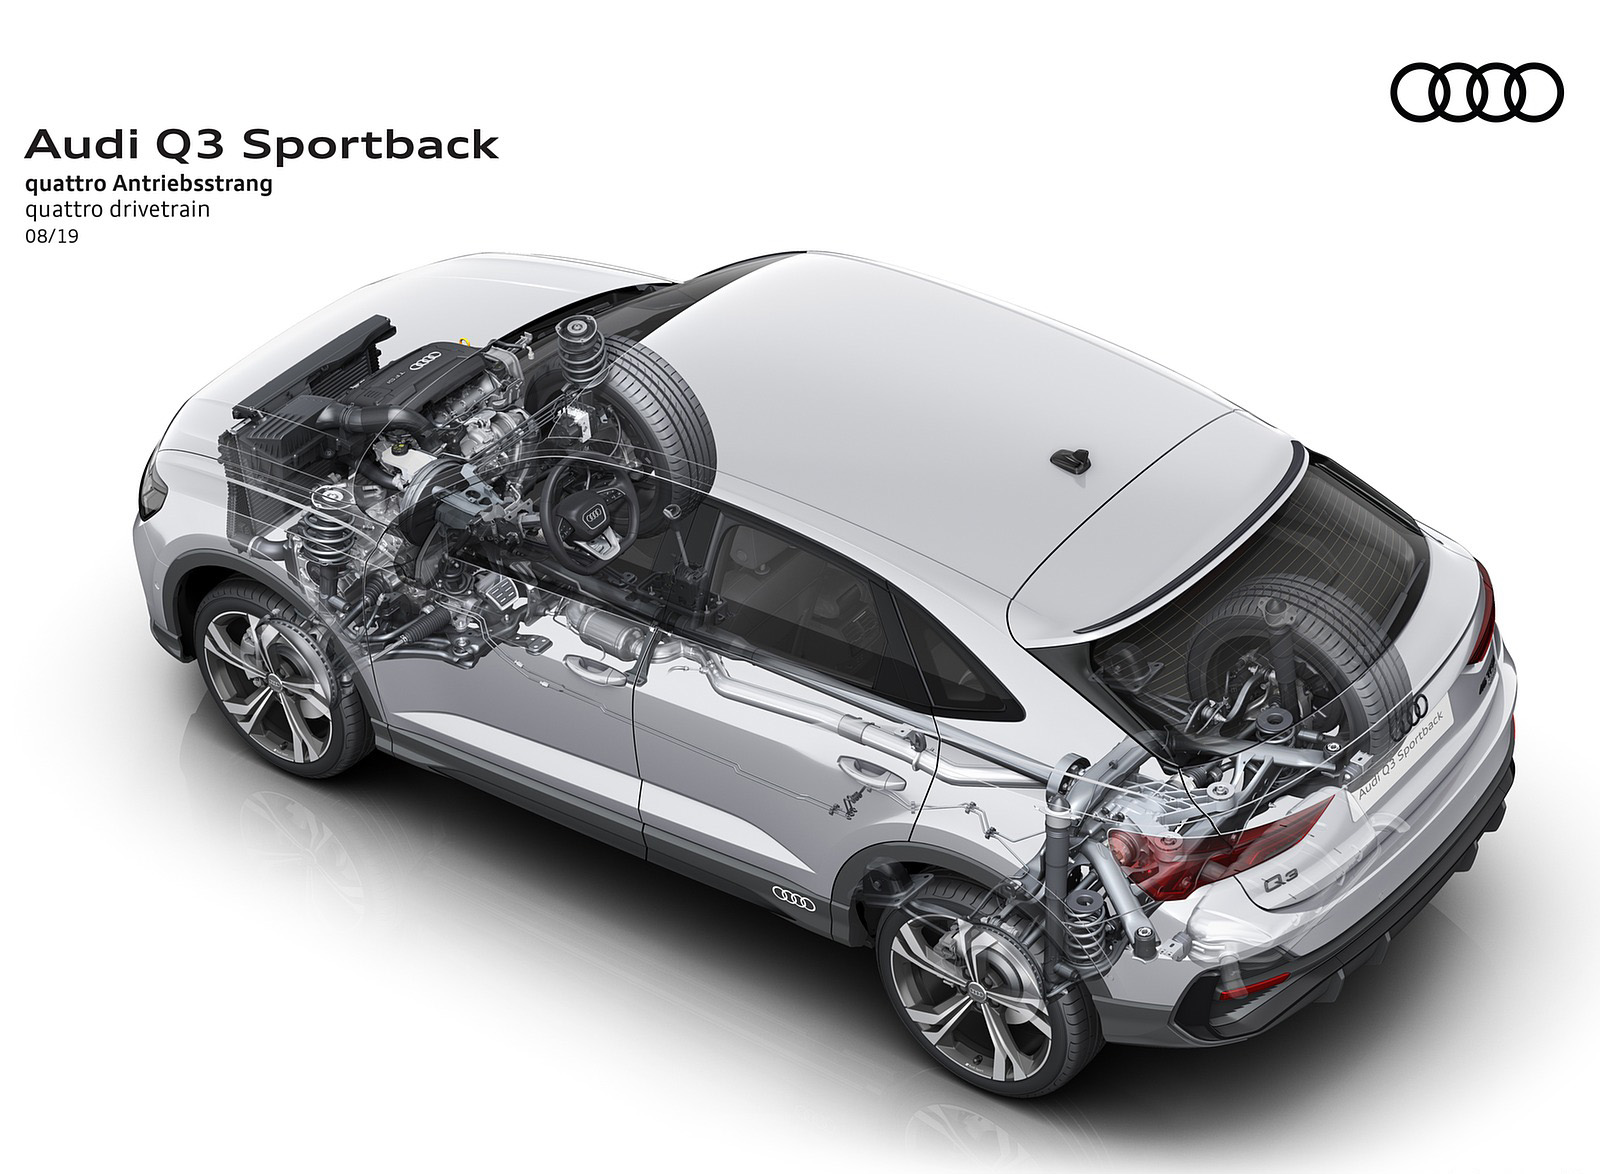 2020 Audi Q3 Sportback quattro drivetrain Wallpapers  #257 of 285